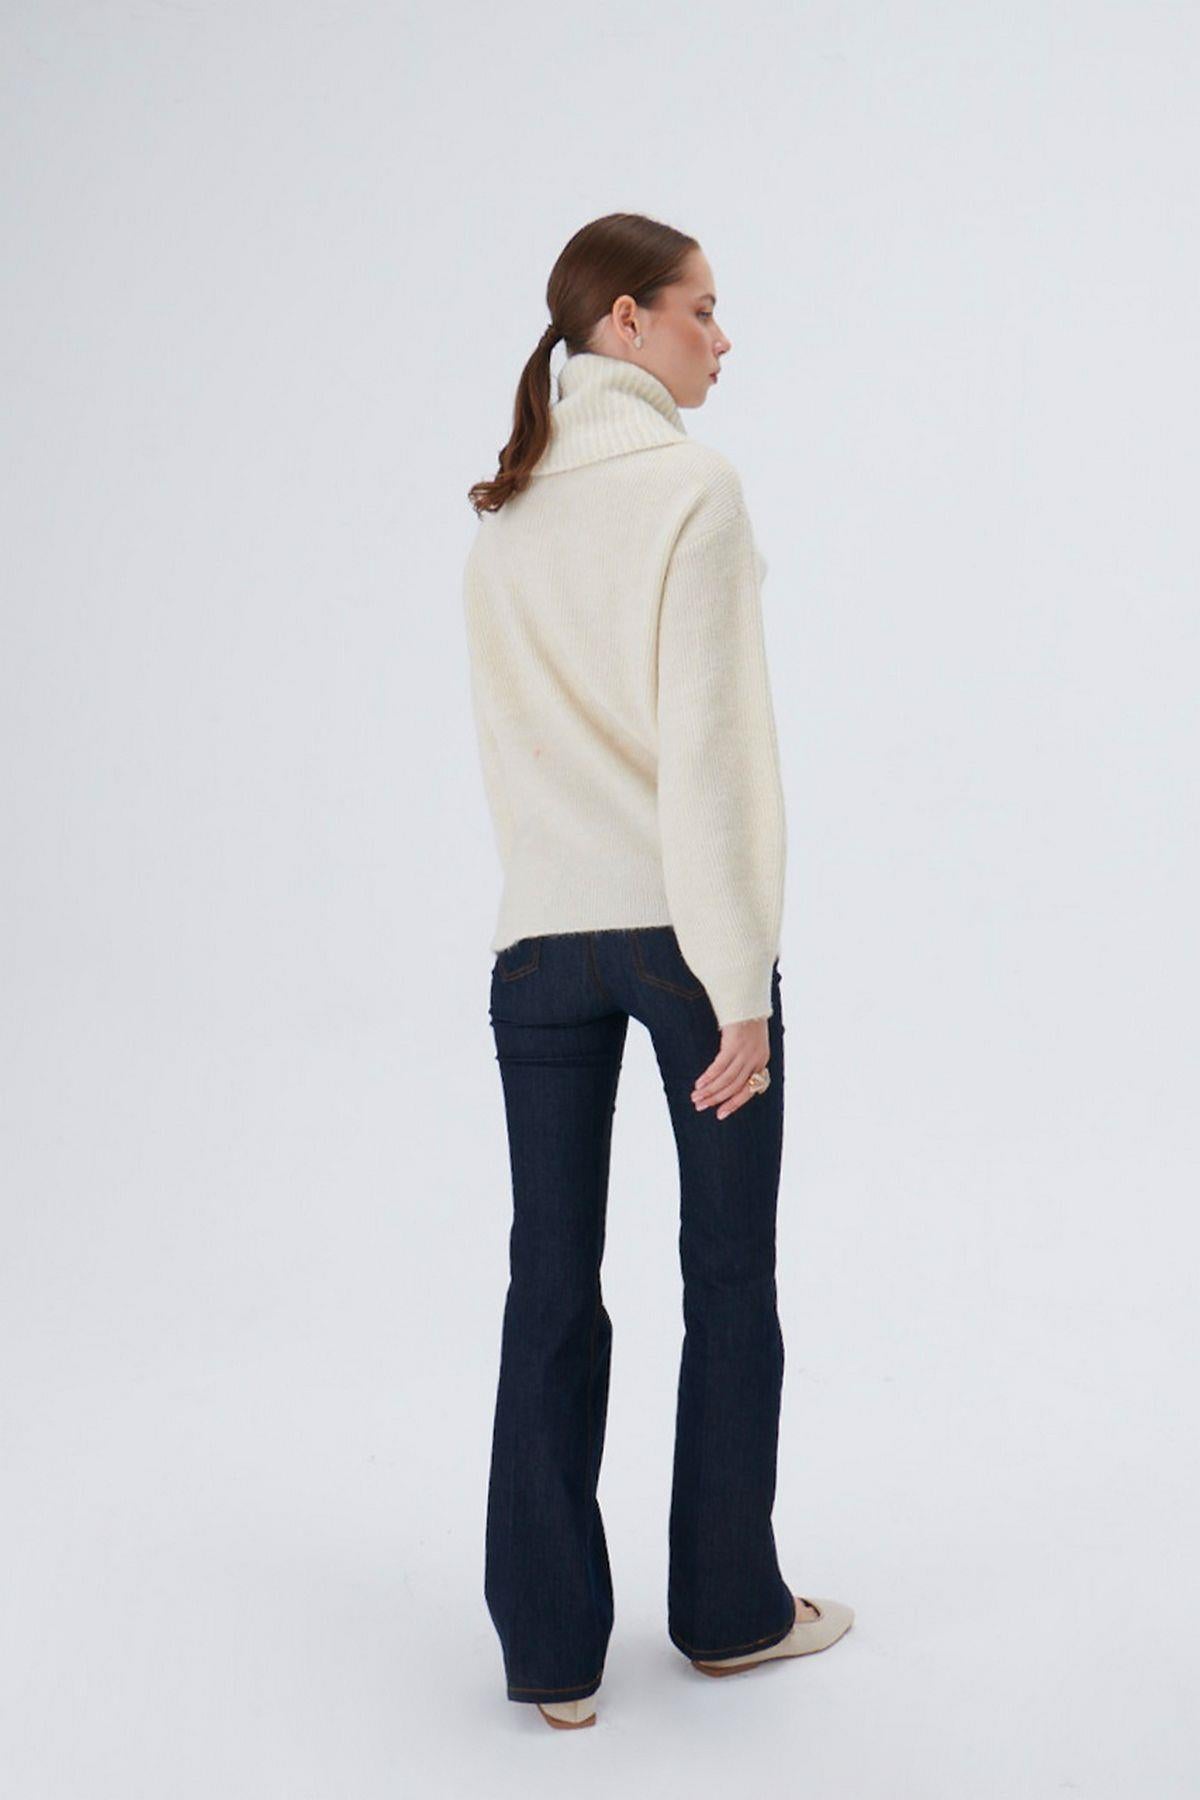 Beige Knitwear Sweater with Asymmetrical Wide Collar